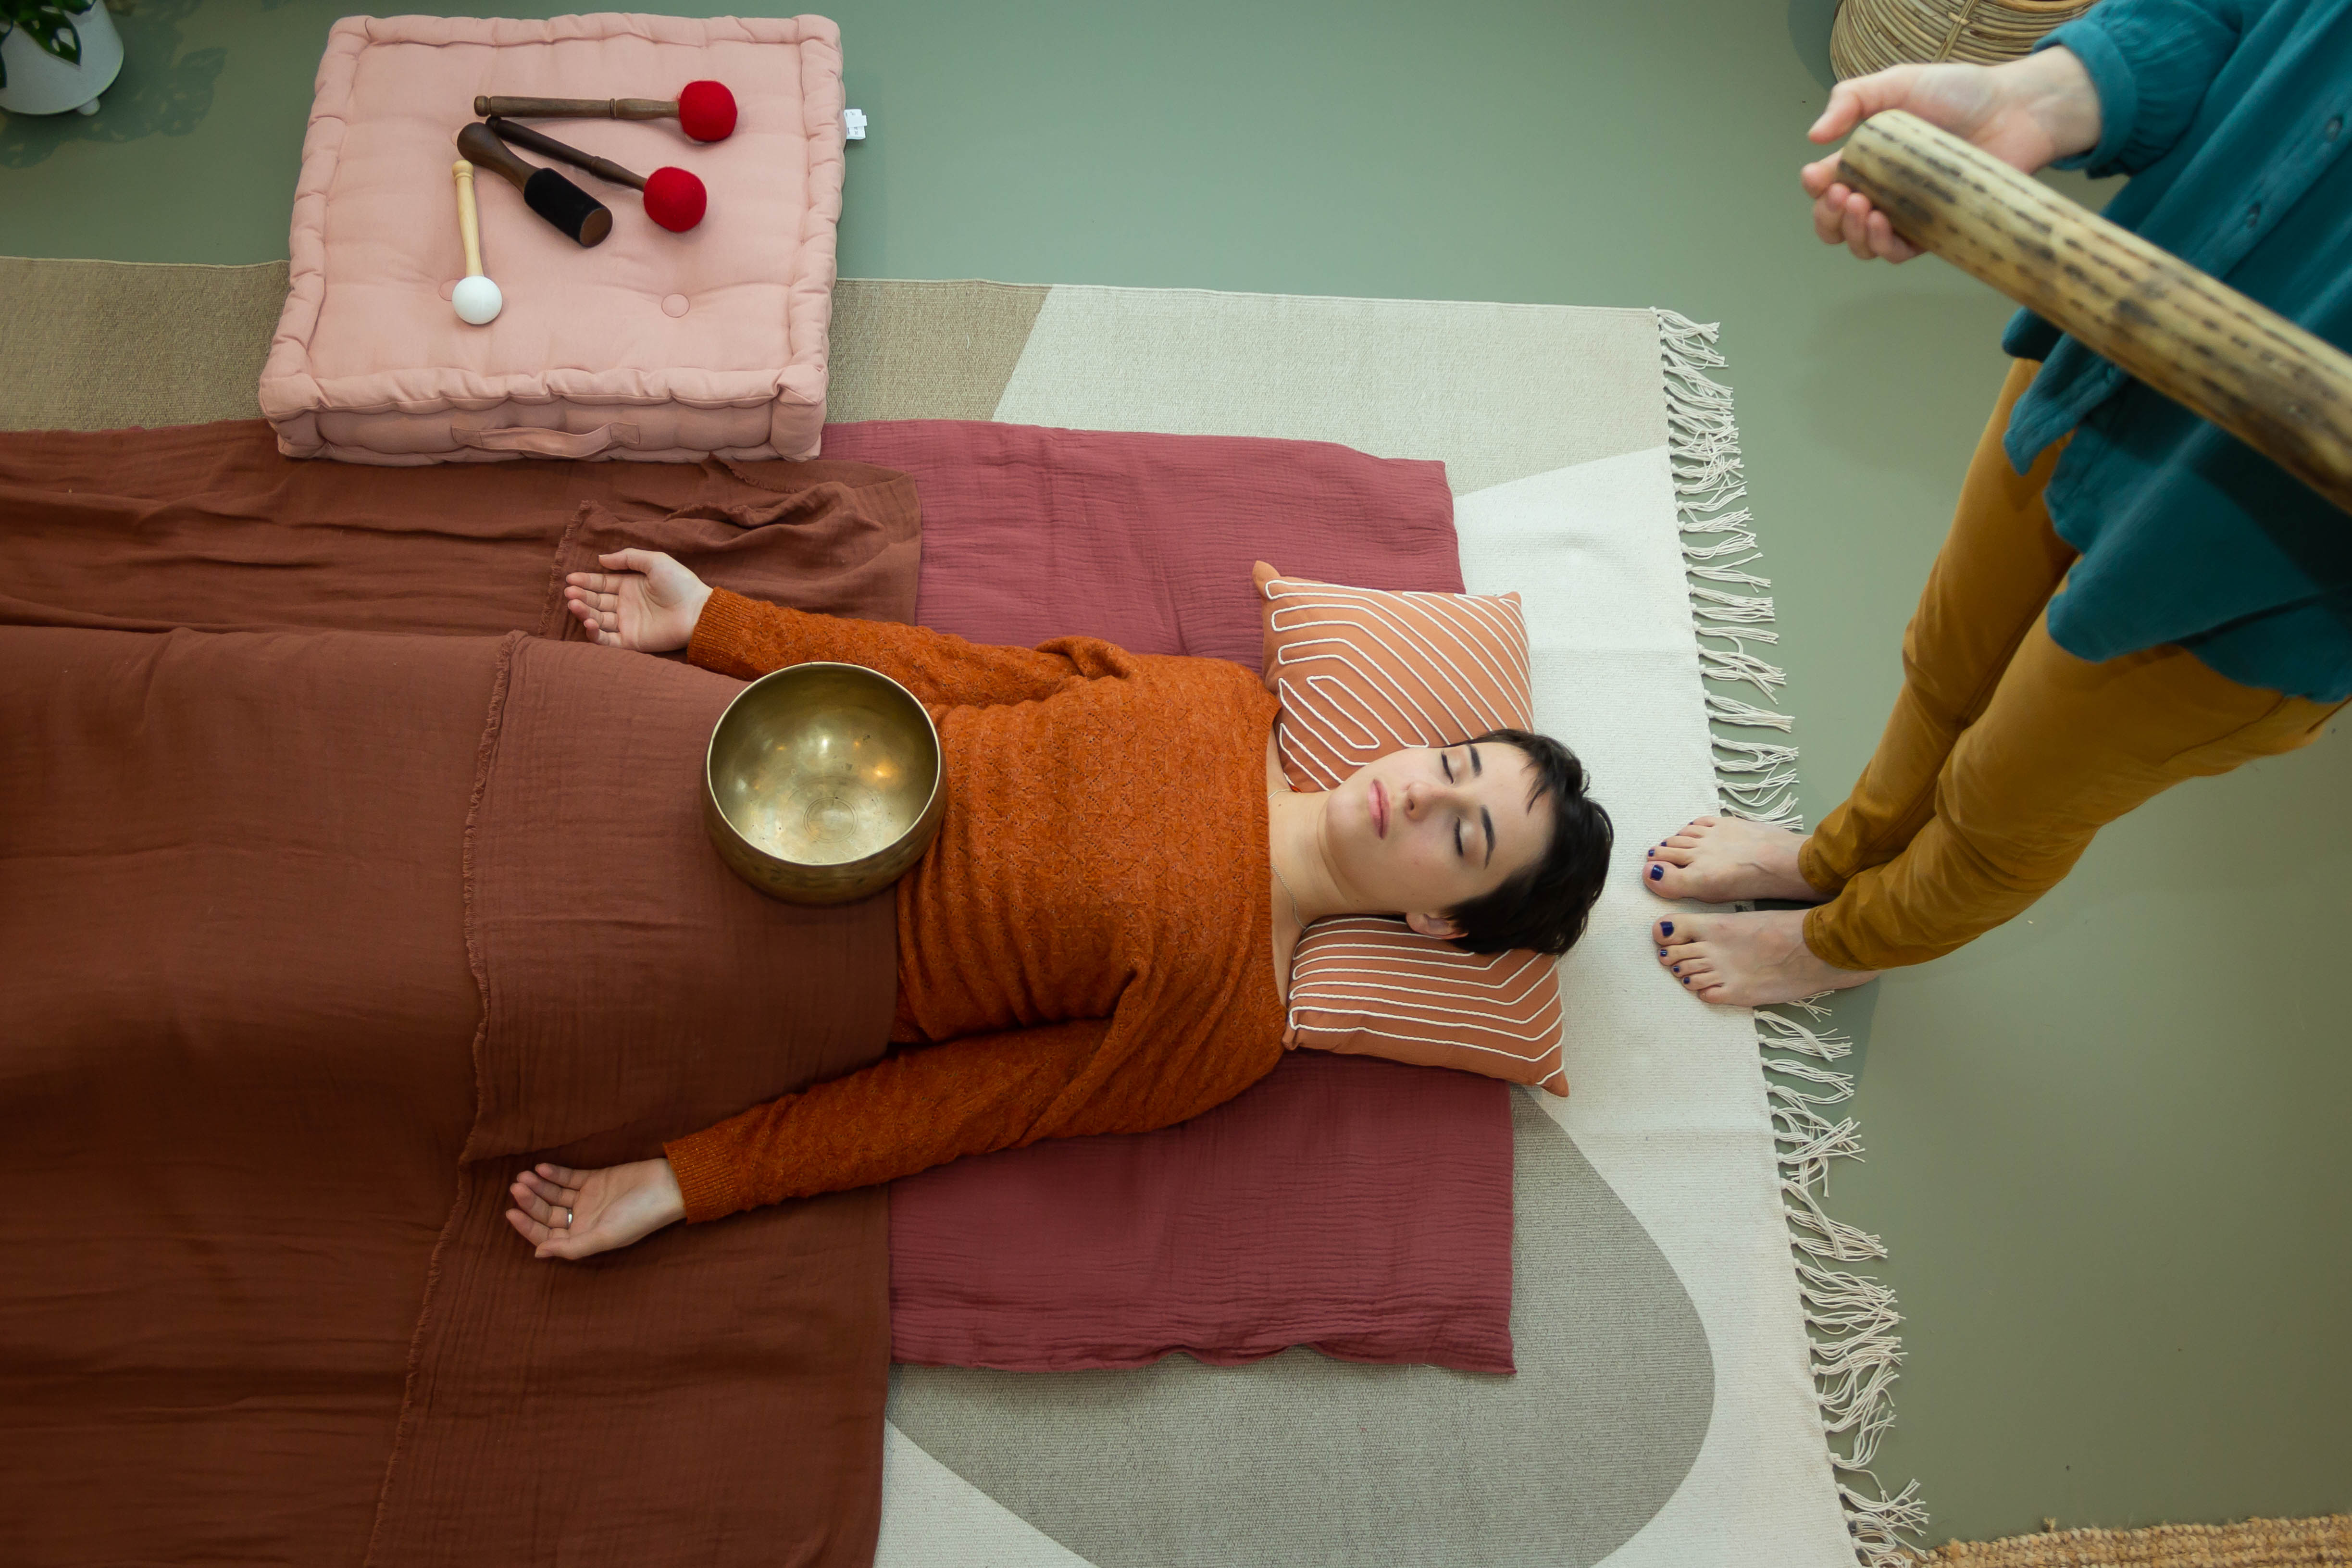 Une patiente est allongée sur le dos, sur un tapis mauve avec un coussin orange et blanc. Elle à les bras tendus et un bols est posé sur son abdomen. Émilie est pieds nu, et se tient debout derrière la patiente avec un bâton